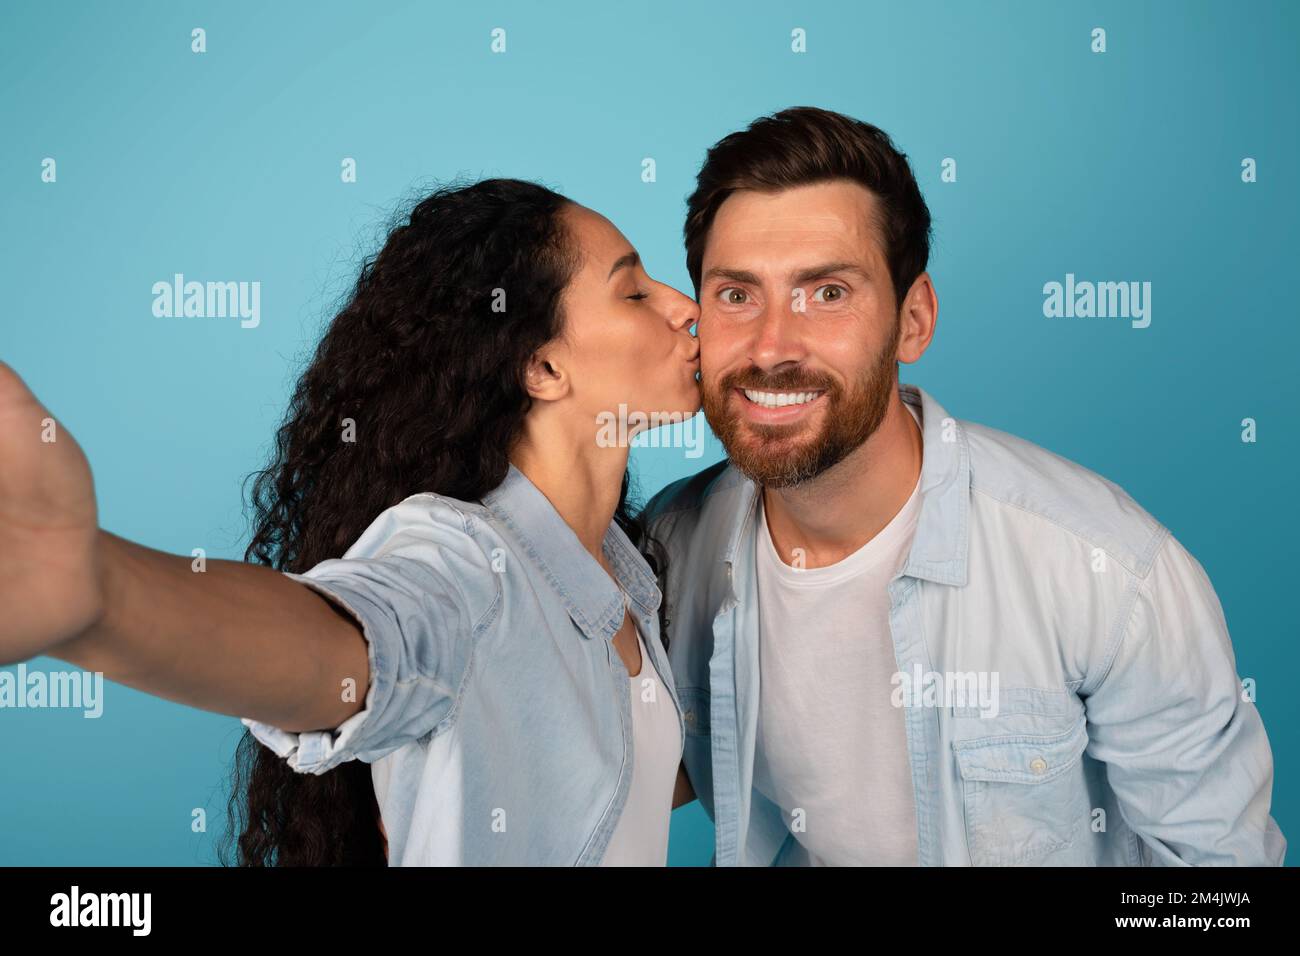 Lächelnde junge europäische Dame küsst männlich mit Bart und macht Selfie, genießt zärtliche Momente Stockfoto